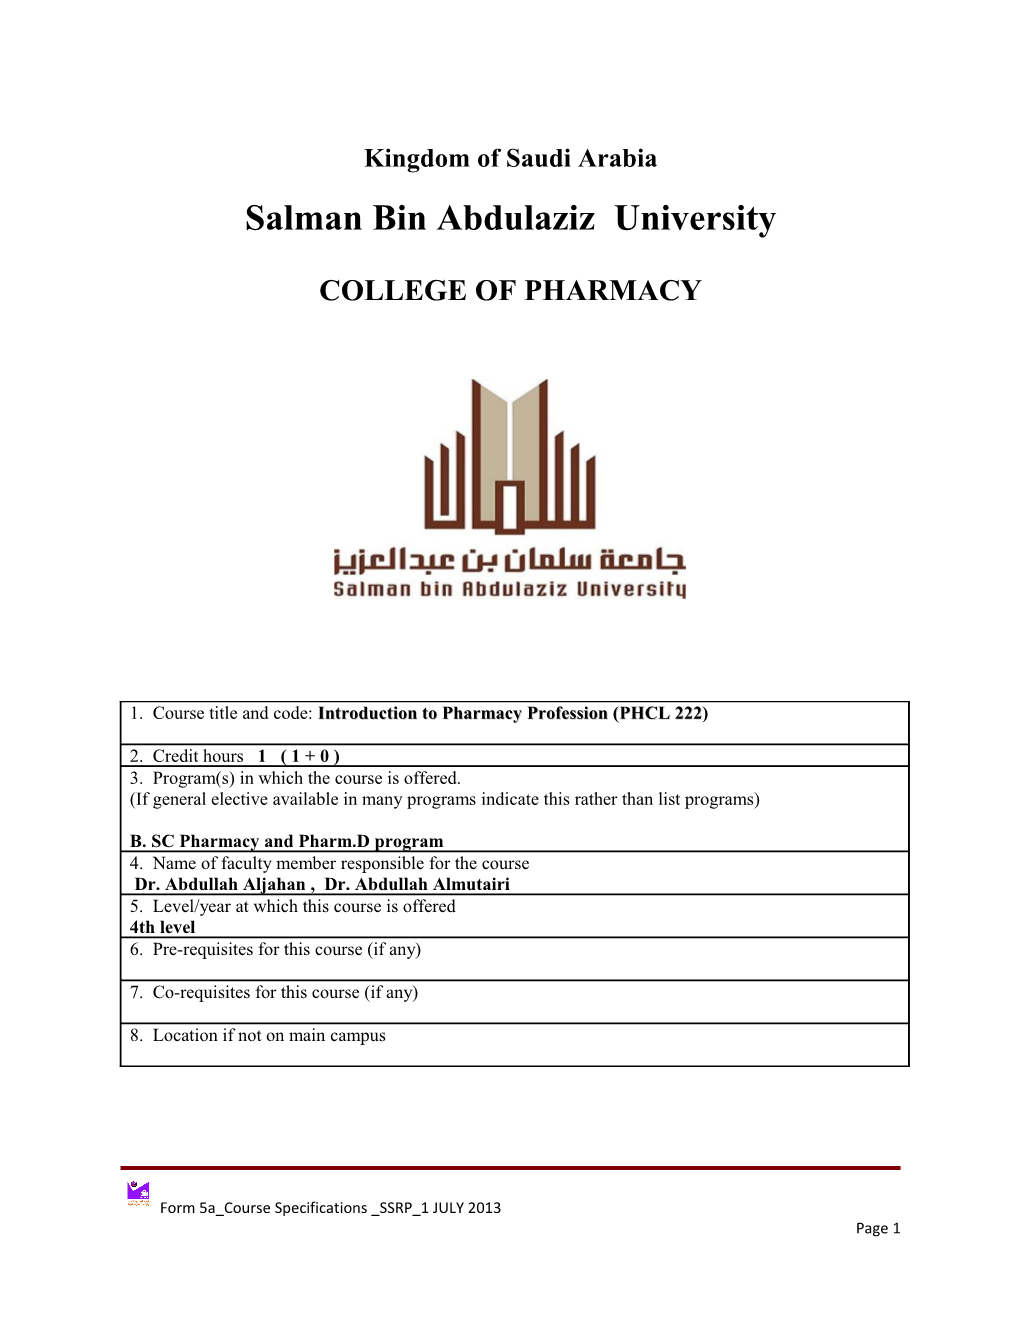 Salman Bin Abdulaziz University